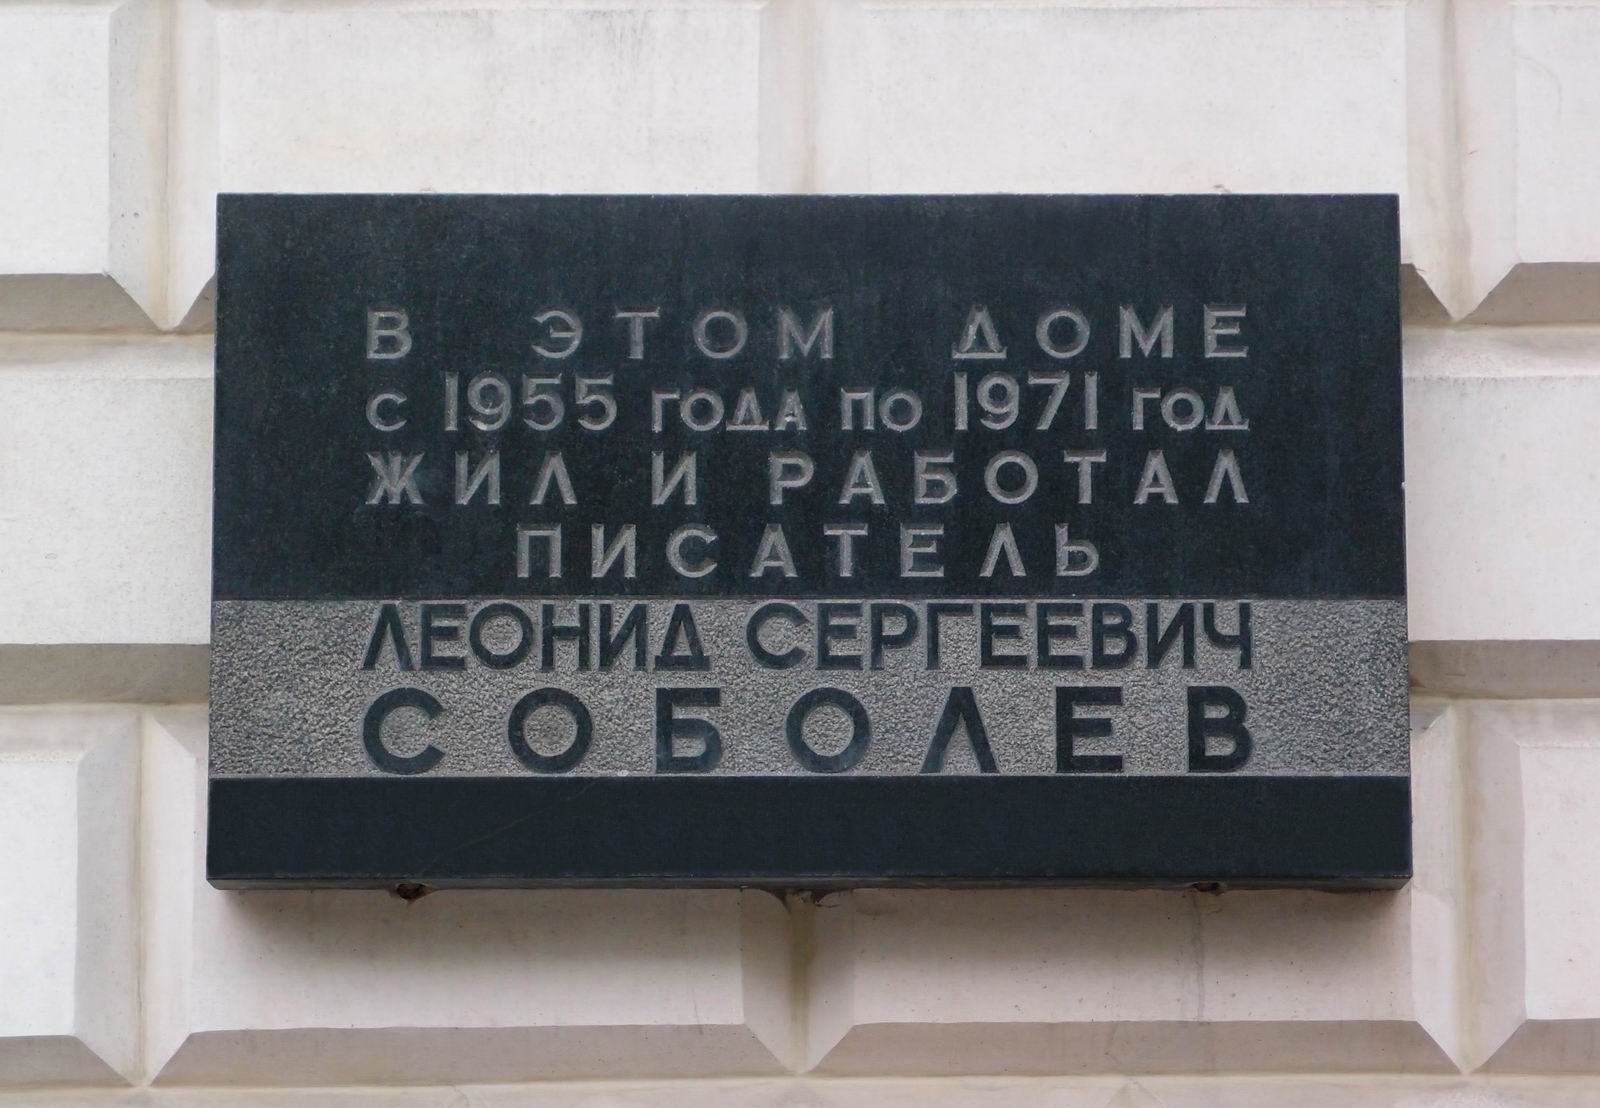 Мемориальная доска Соболеву Л.С. (1898–1971), арх. С.П.Дмитренко, на Кутузовском проспекте, дом 2/1, открыта 26.7.1974.